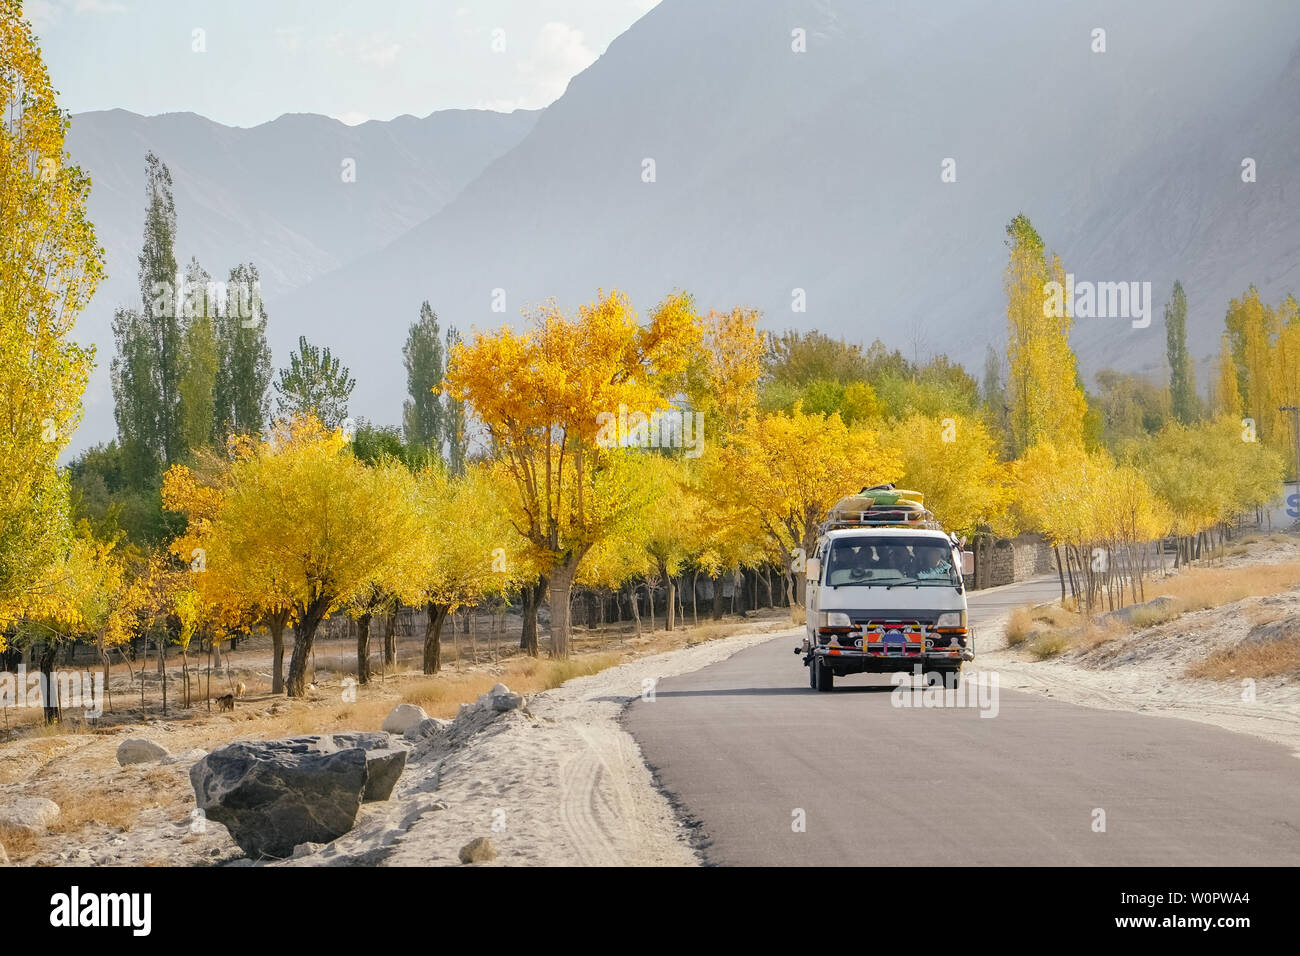 Un bus local s'exécutant sur des routes pavées avec des valises sur le toit avec vue paysage en automne, Skardu. Gilgit Baltistan, au Pakistan. Banque D'Images